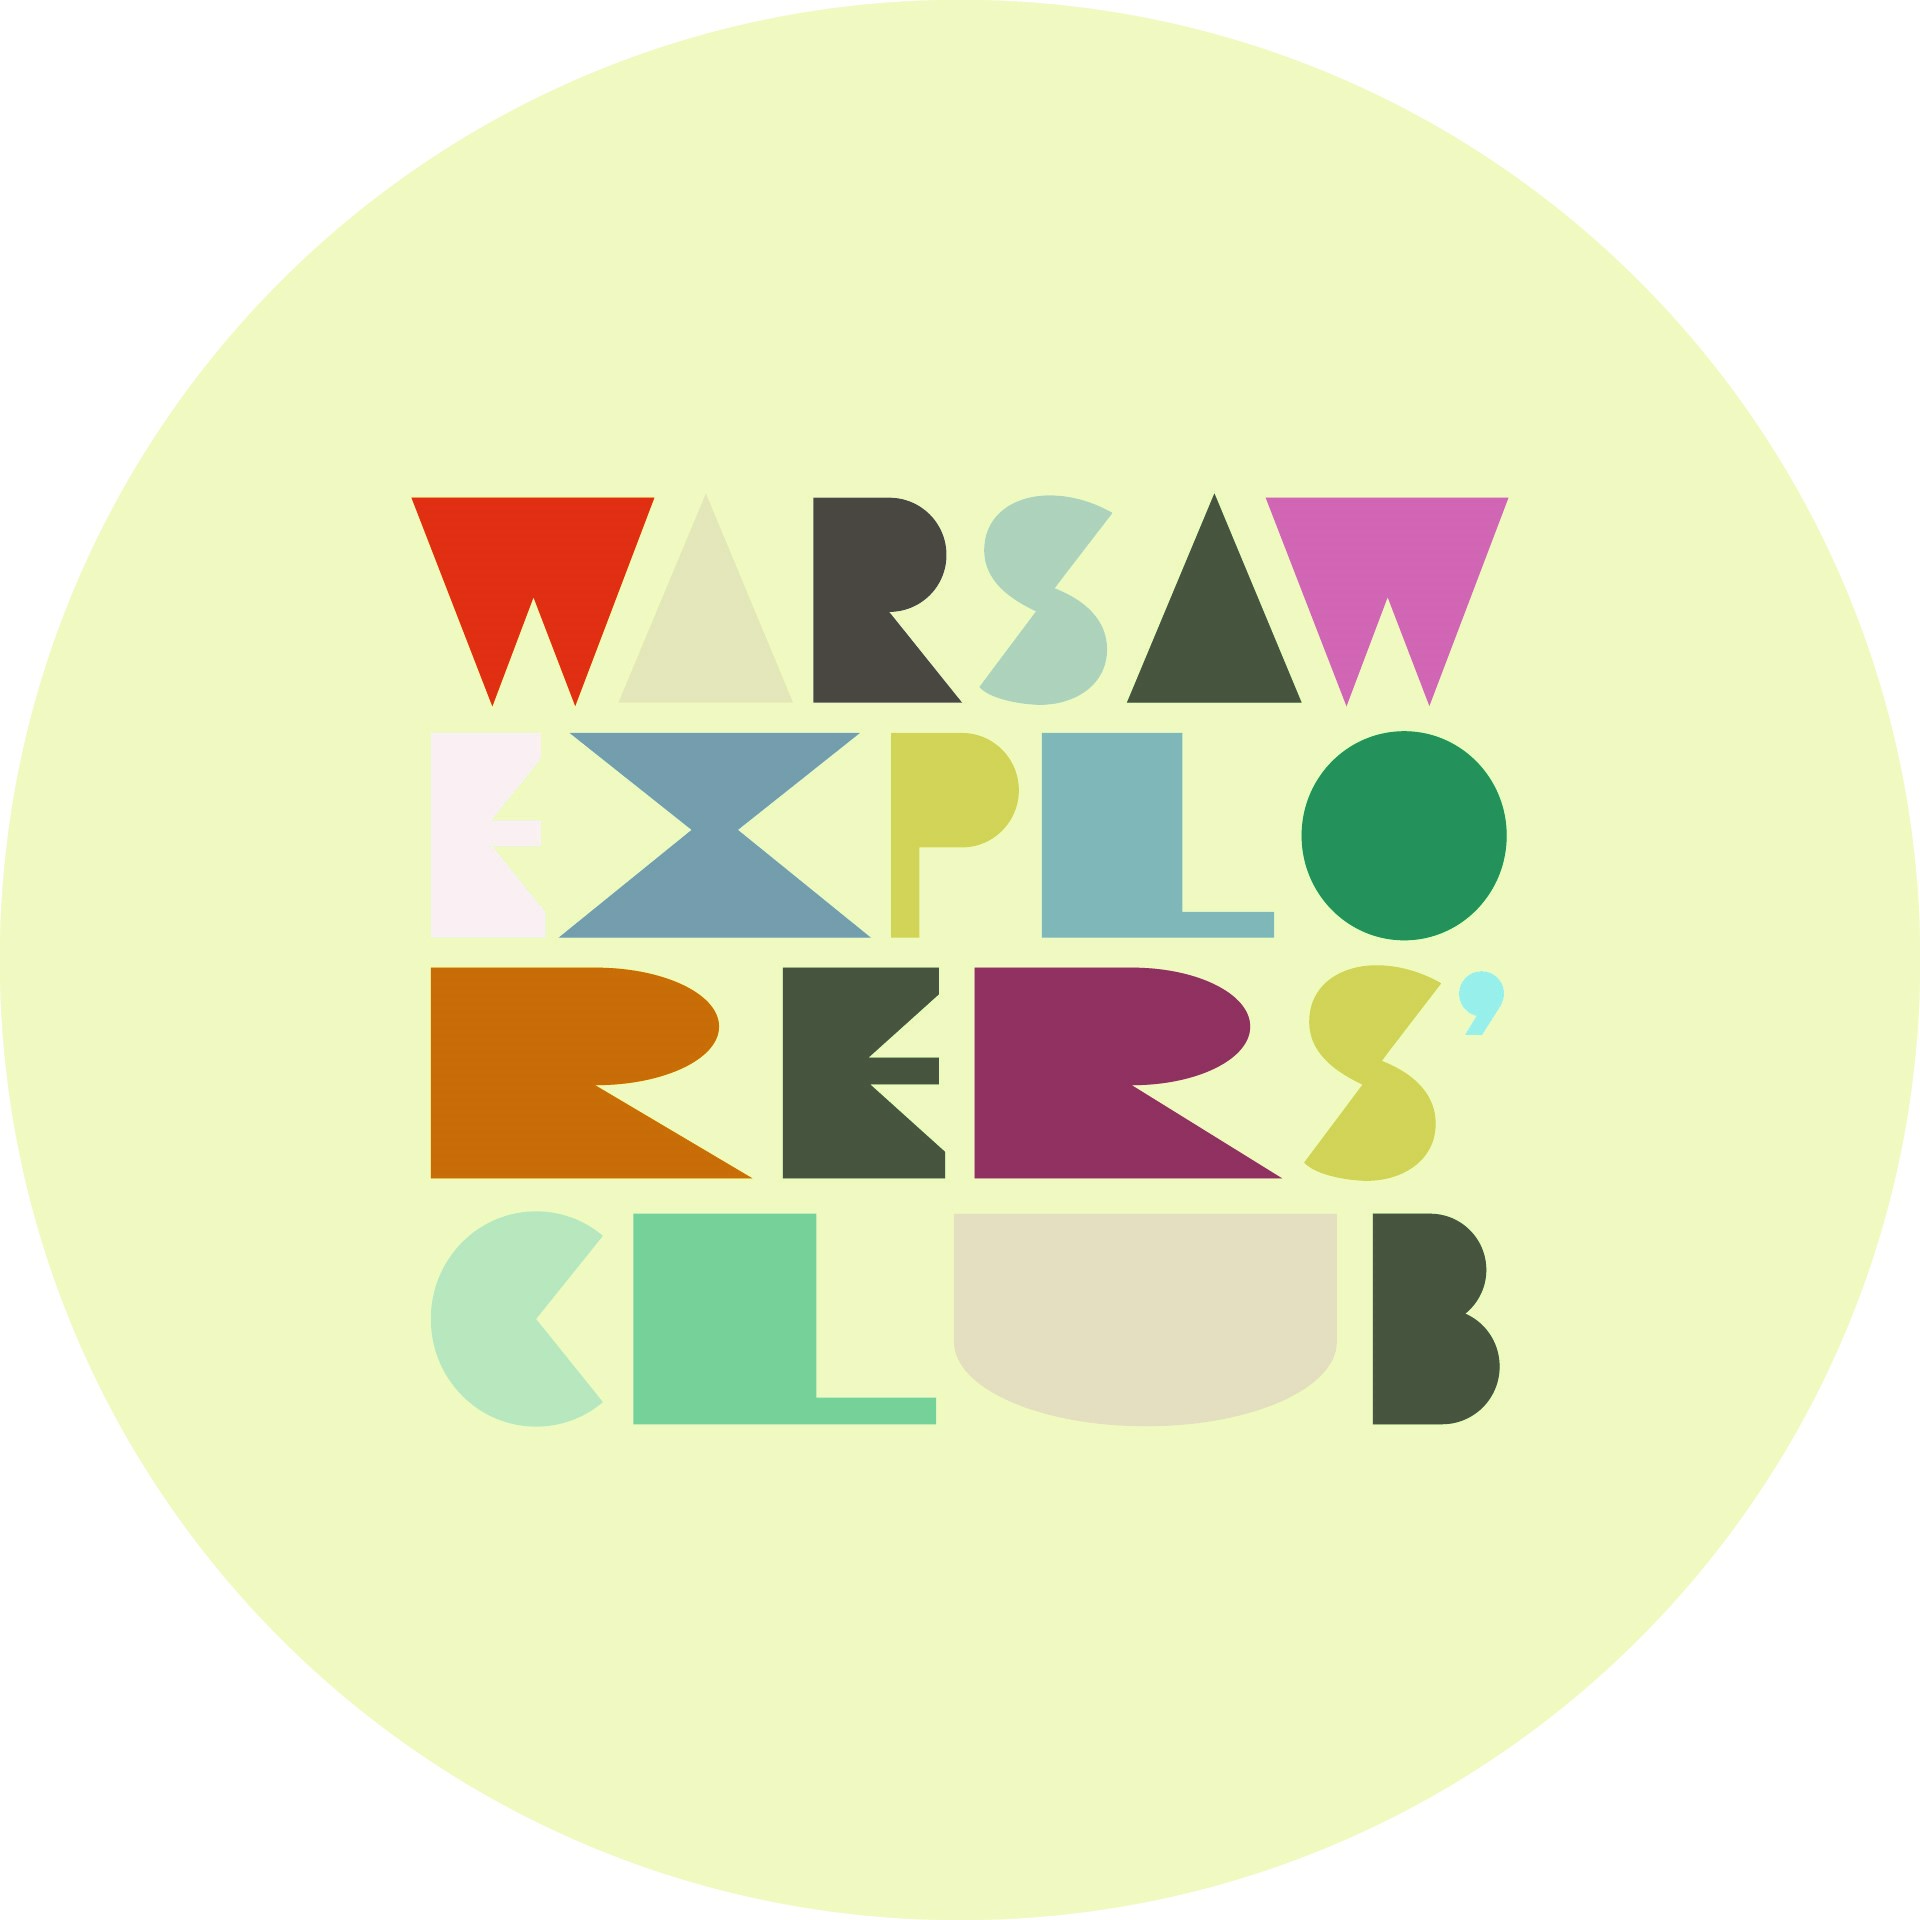 Warsaw Explorers' Club logotype